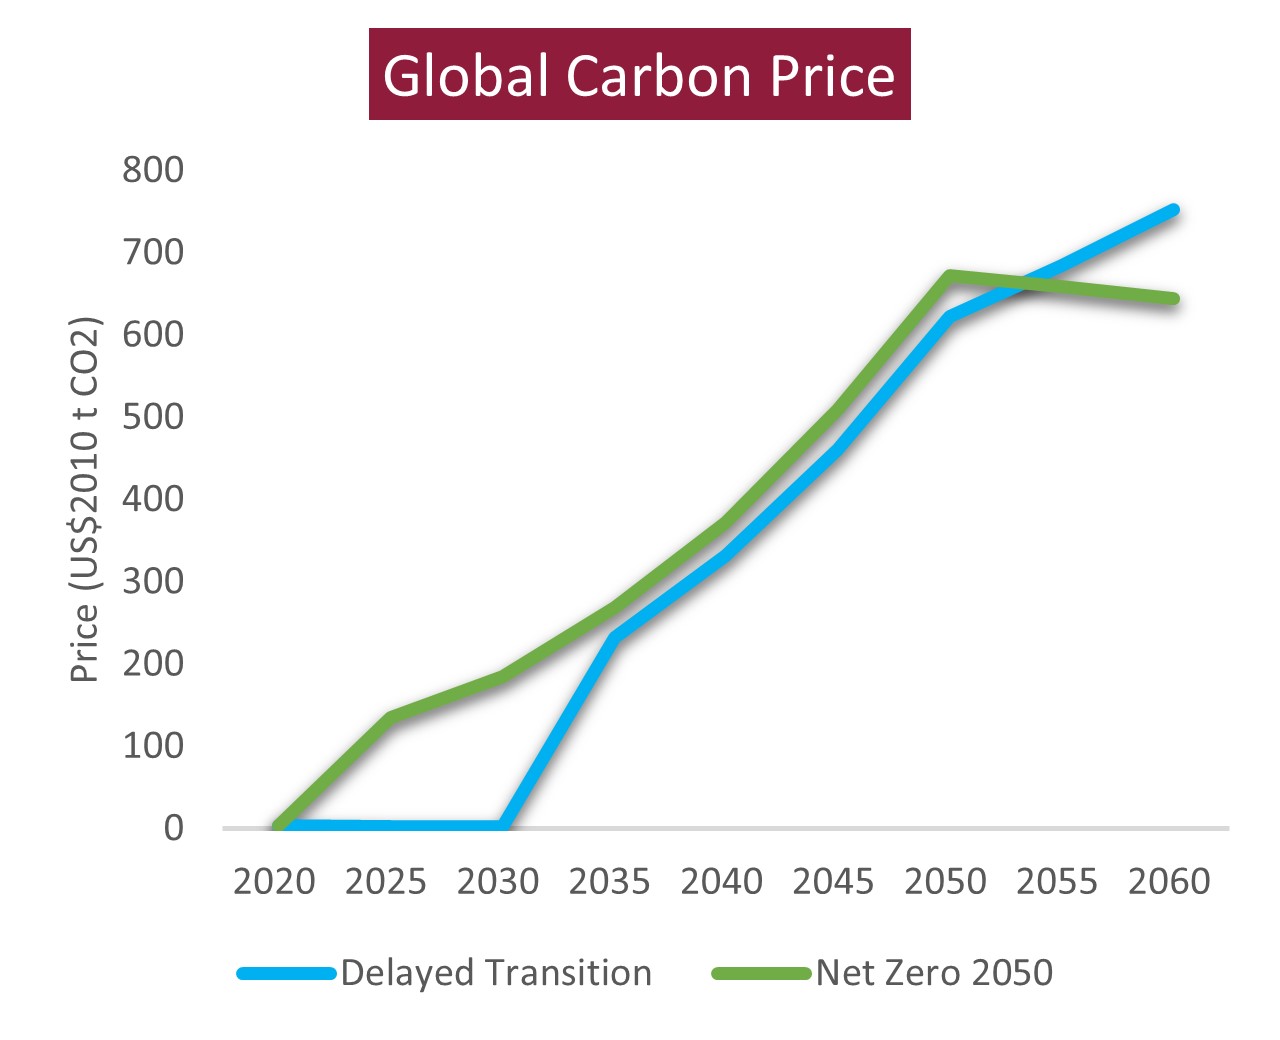 Precio global del carbono basado en Transición Retrasada vs. Cero Neto 2050